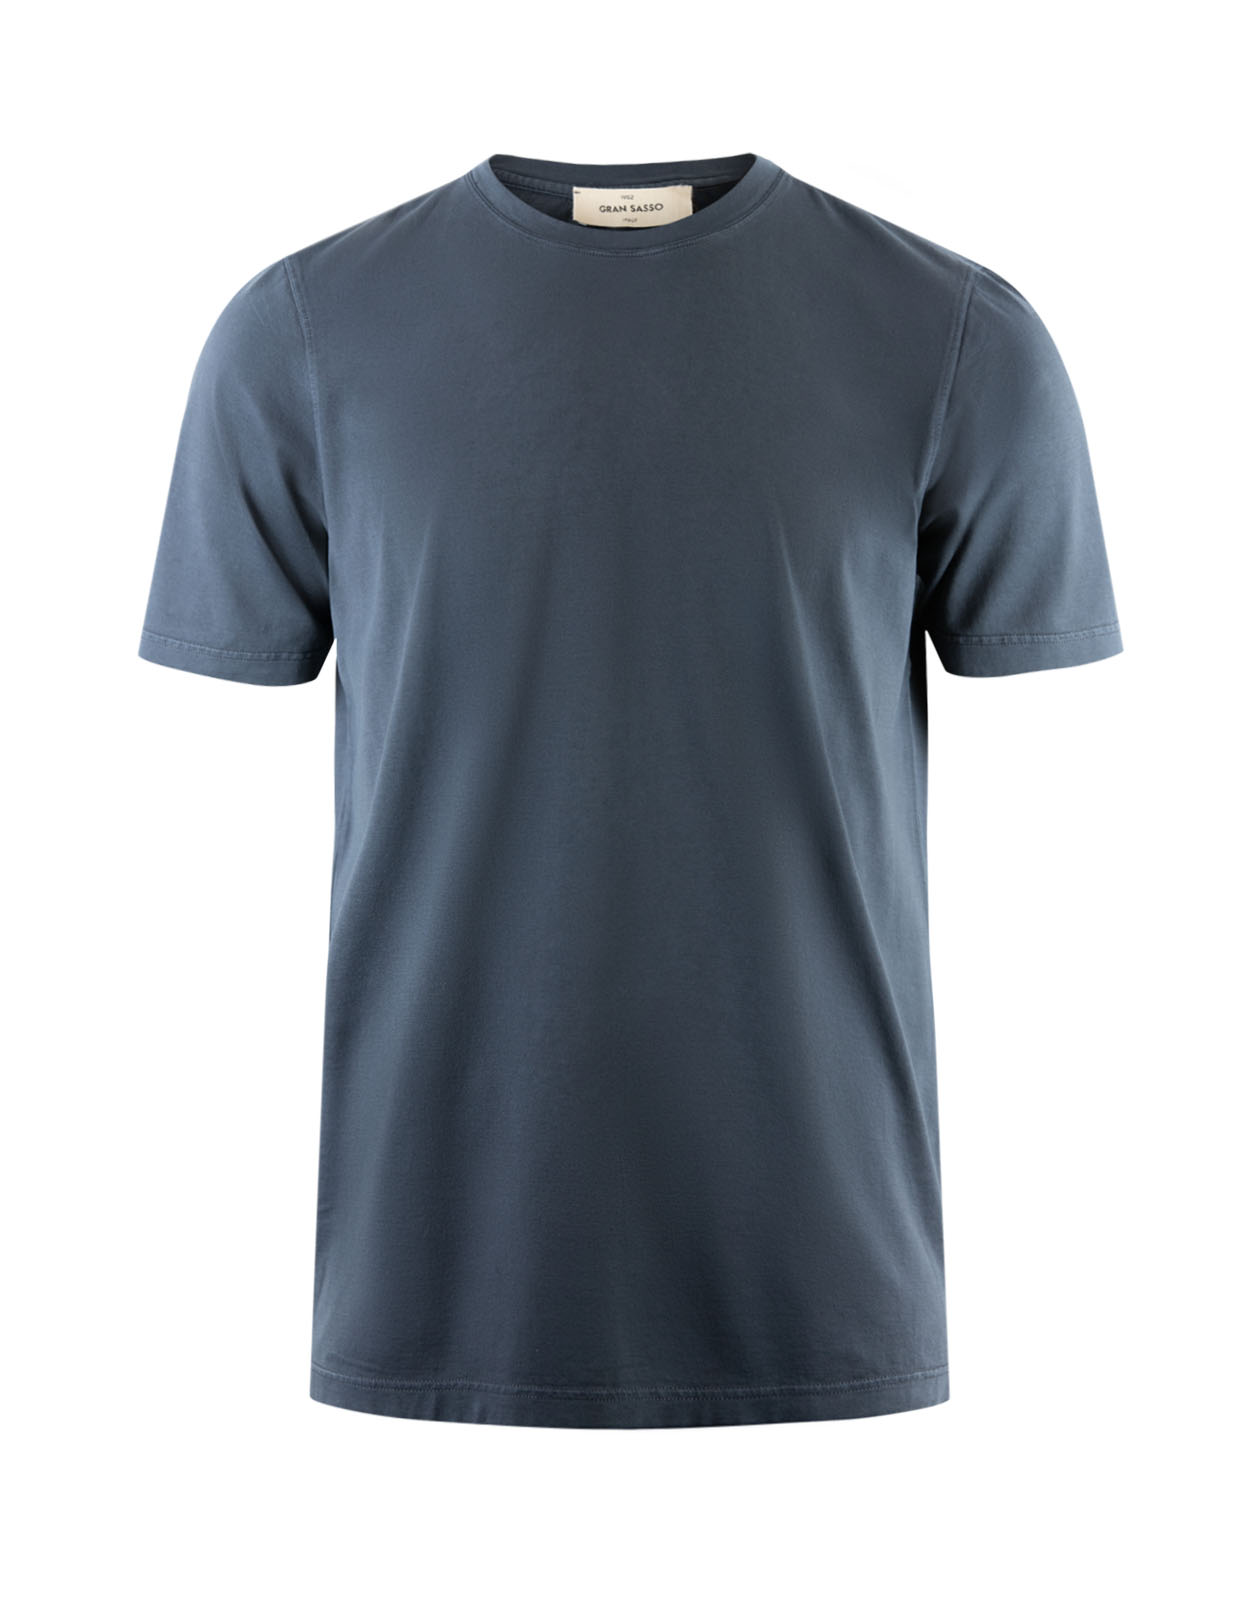 T-Shirt Bomull Navy Stl 50